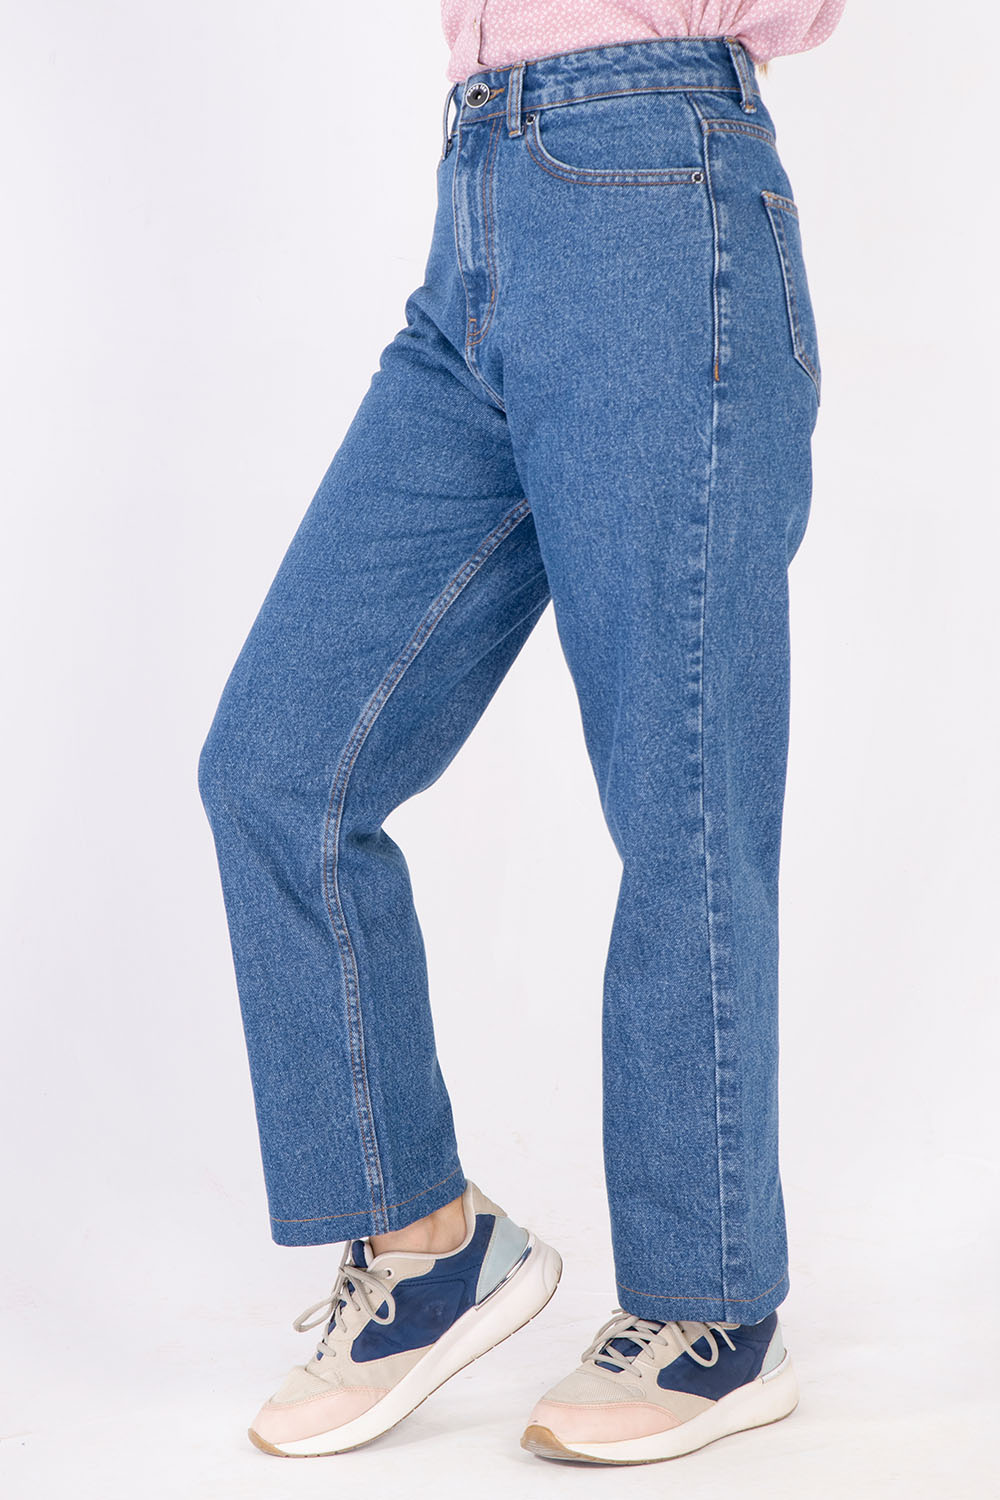 Women's Denim Jeans